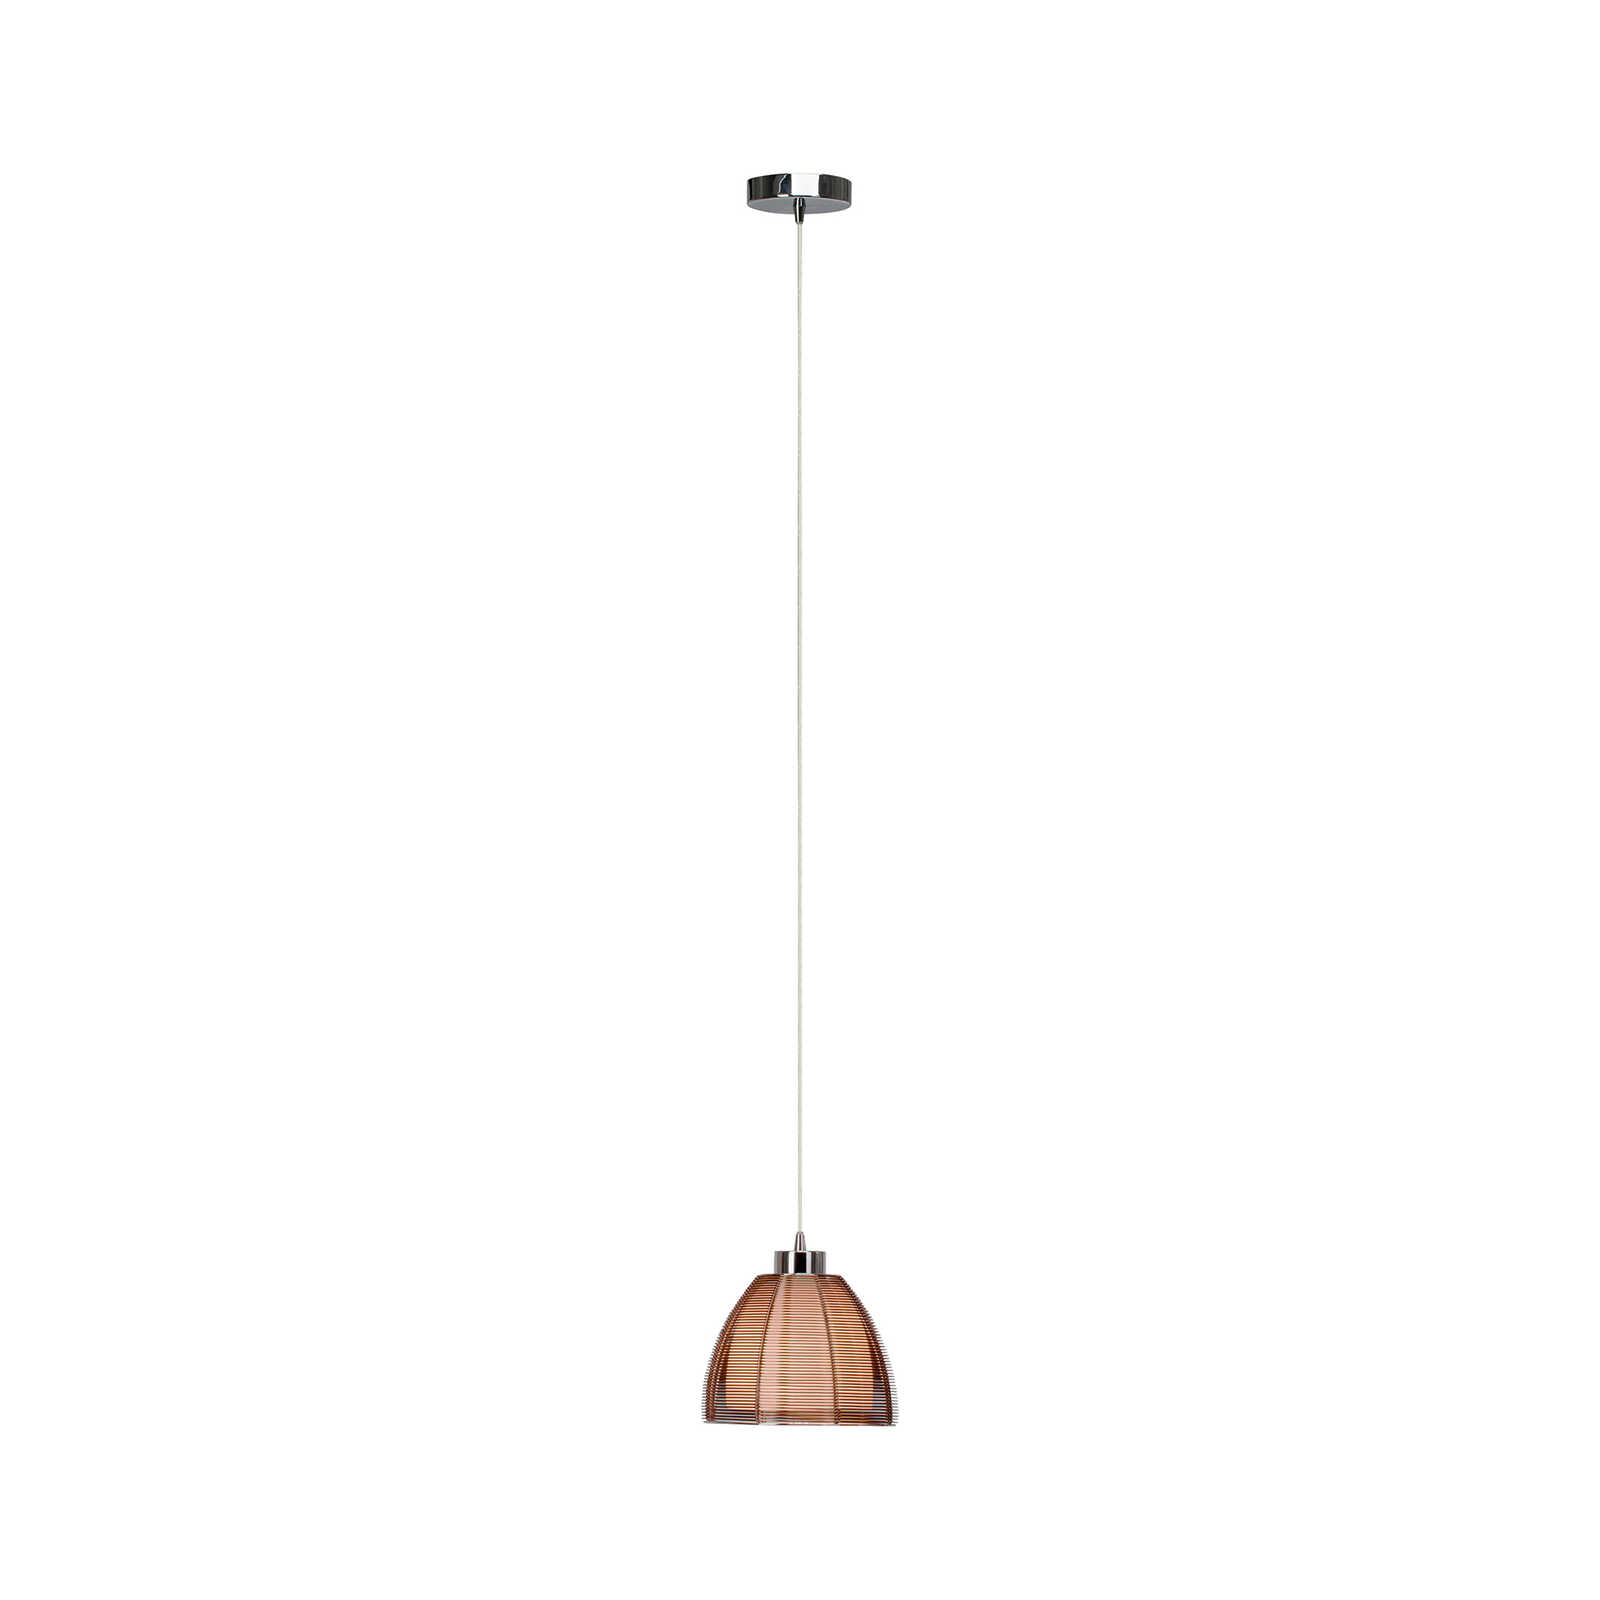 Glazen hanglamp - Maxime 2 - Bruin
